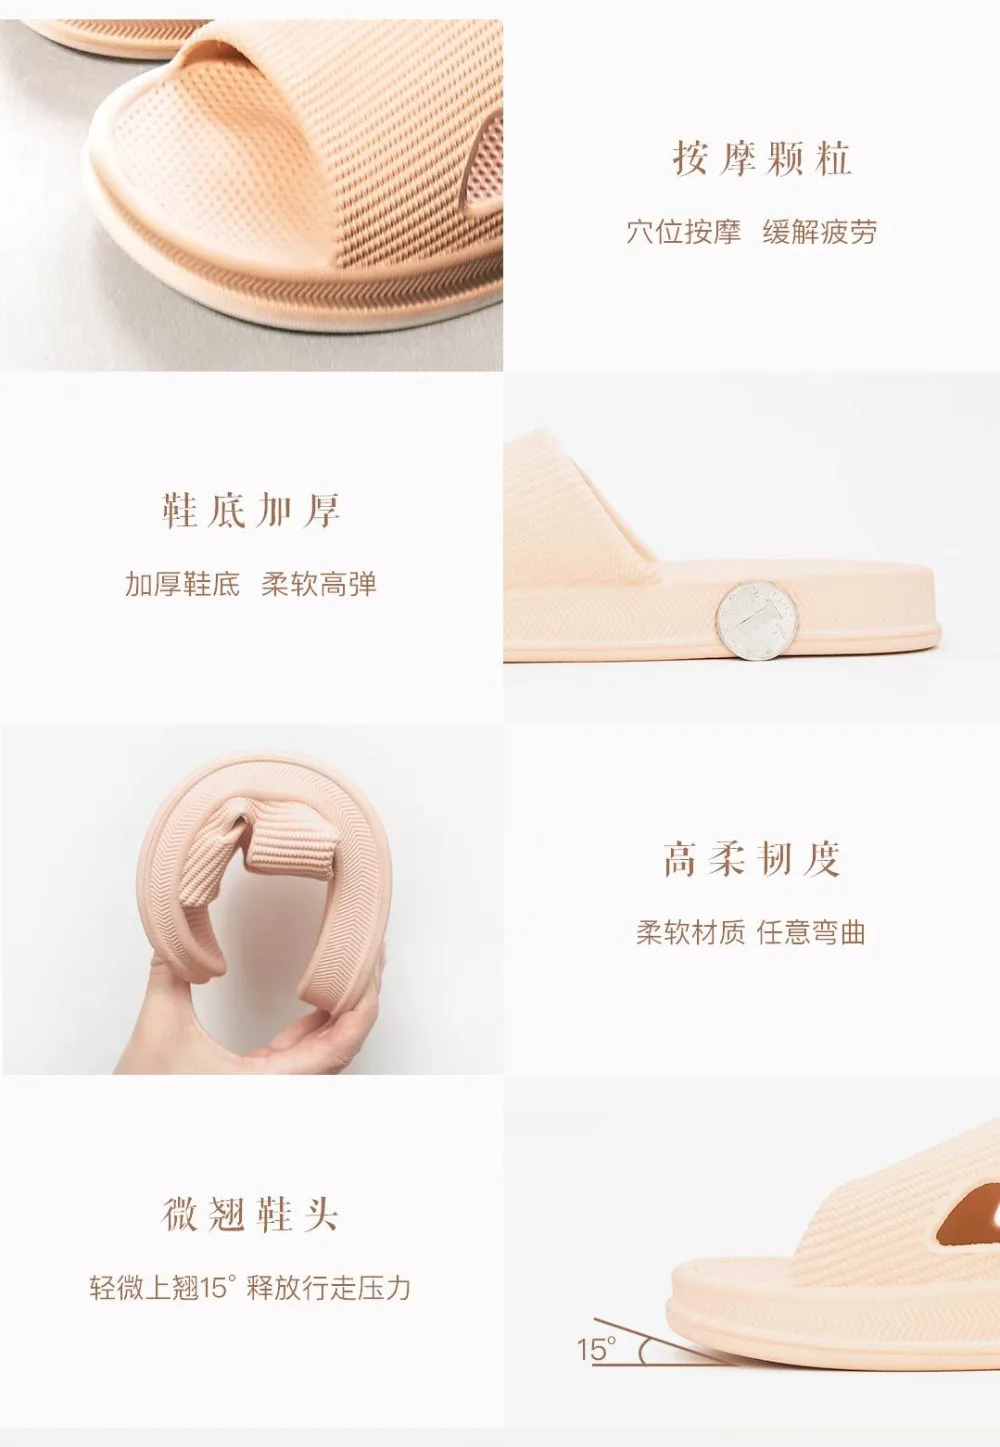 Xiao mi jia/тапочки мягкие женские, мужские, детские сандалии Нескользящие домашние тапочки для душа детские повседневные тапочки mi home